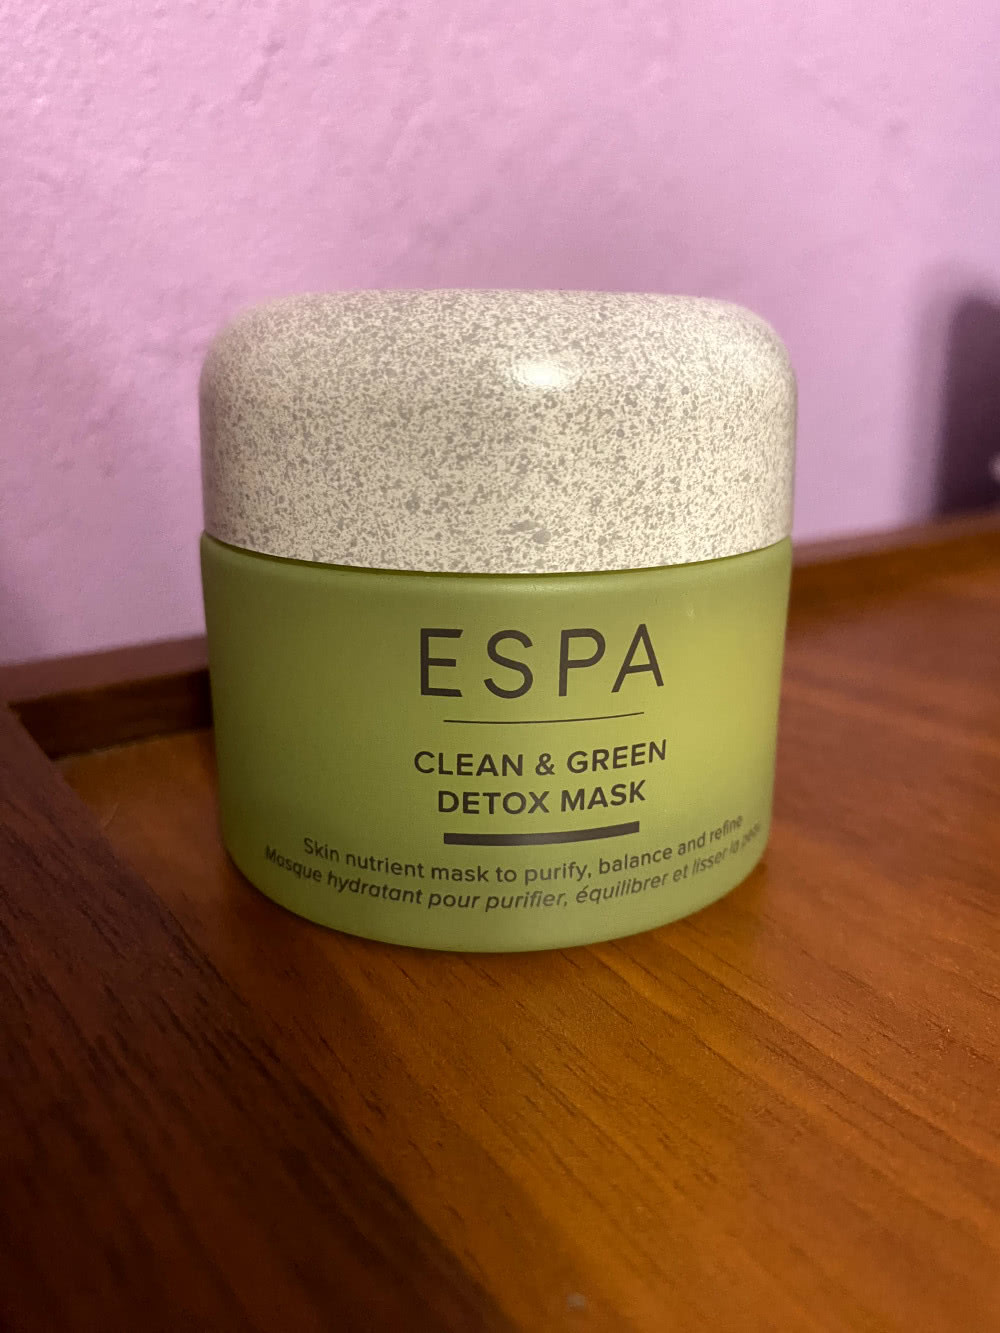 ESPA clean&green detox mask